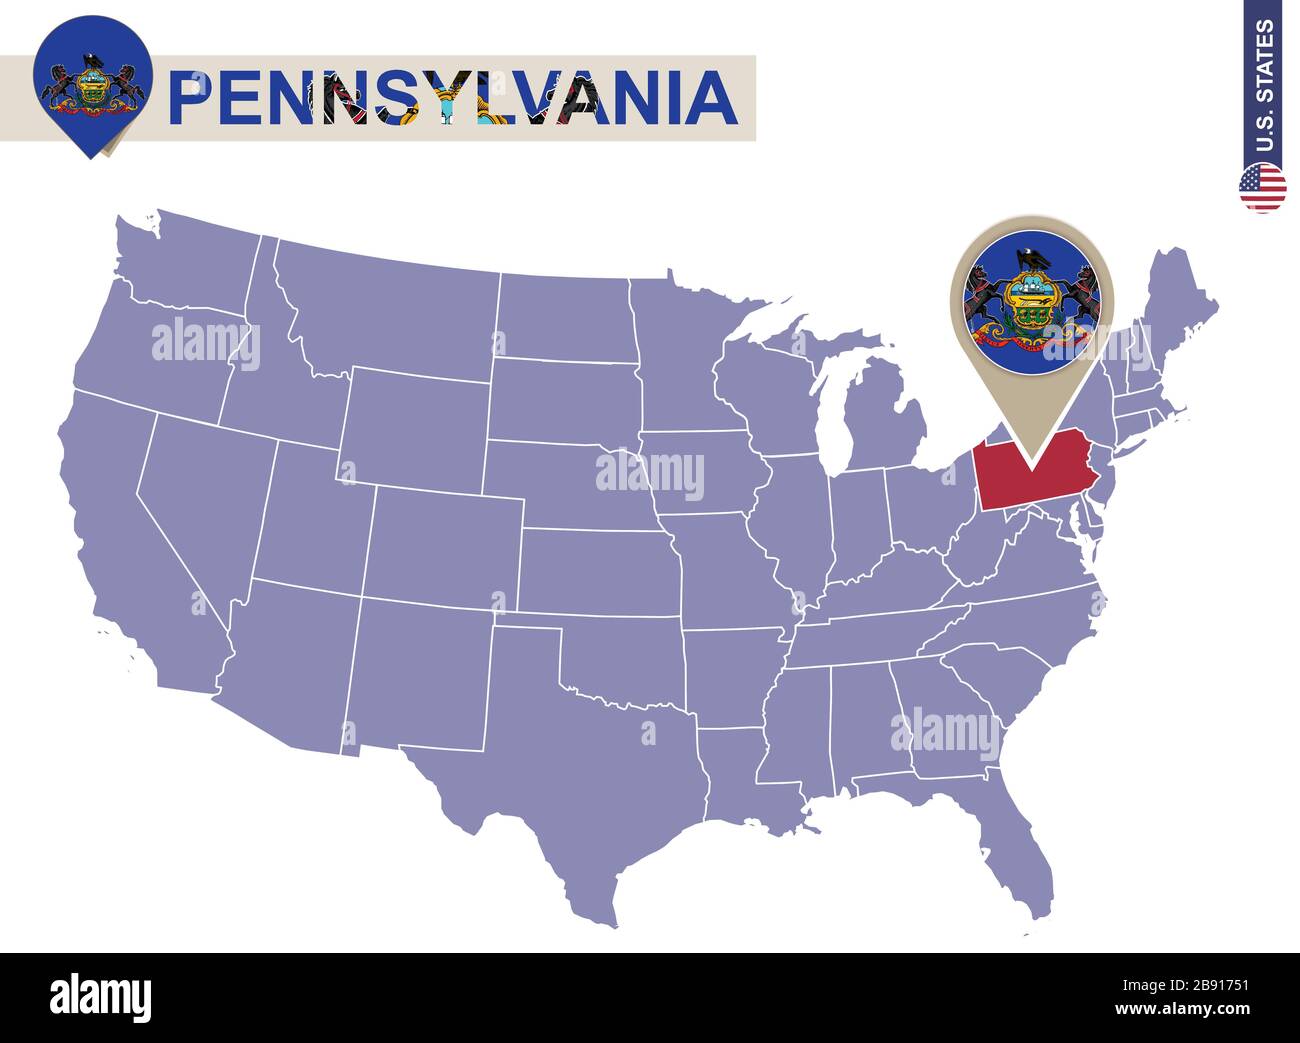 Pennsylvania State sur la carte des États-Unis. Drapeau et carte de Pennsylvanie. États-UNIS. Illustration de Vecteur